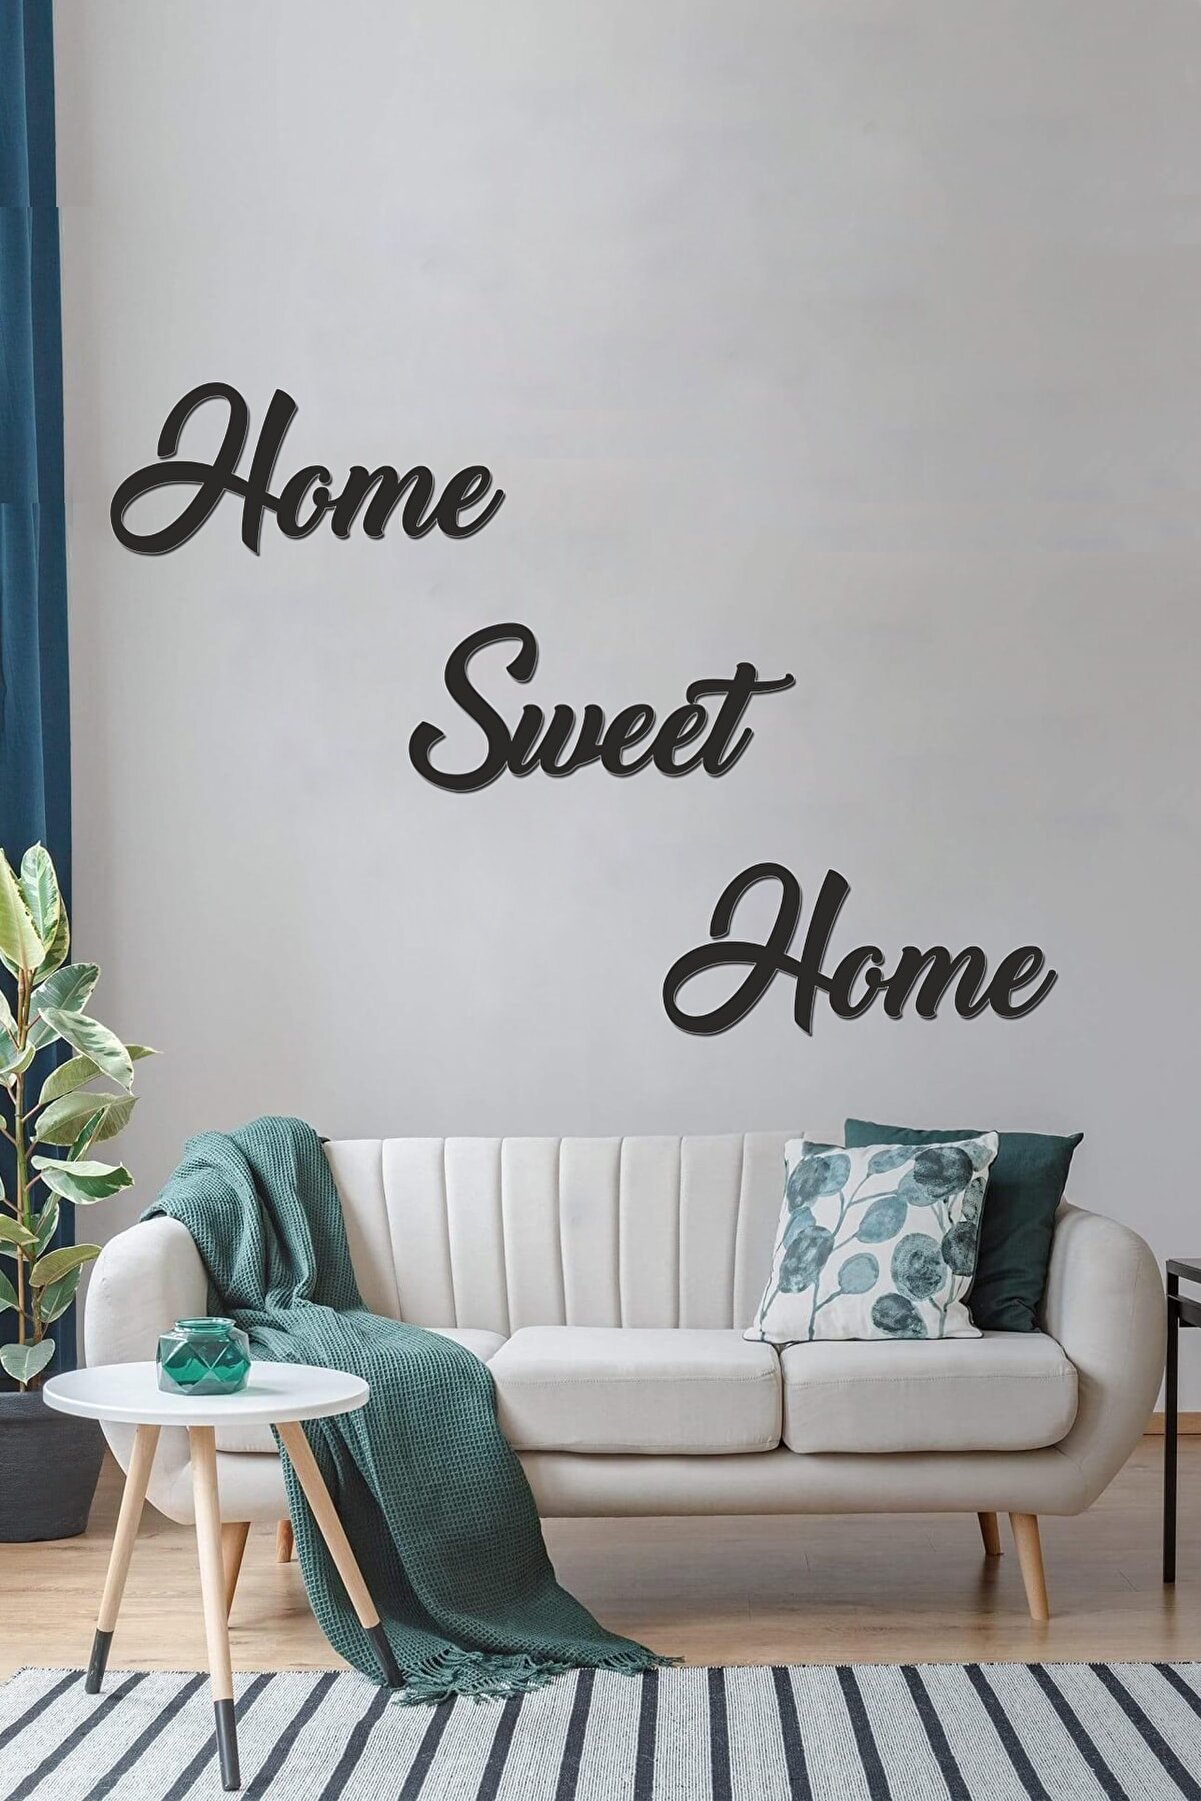 Tahtakurusu Tasarım Home Sweet Home - Dekoratif Ahşap Duvar Yazısı Tablo